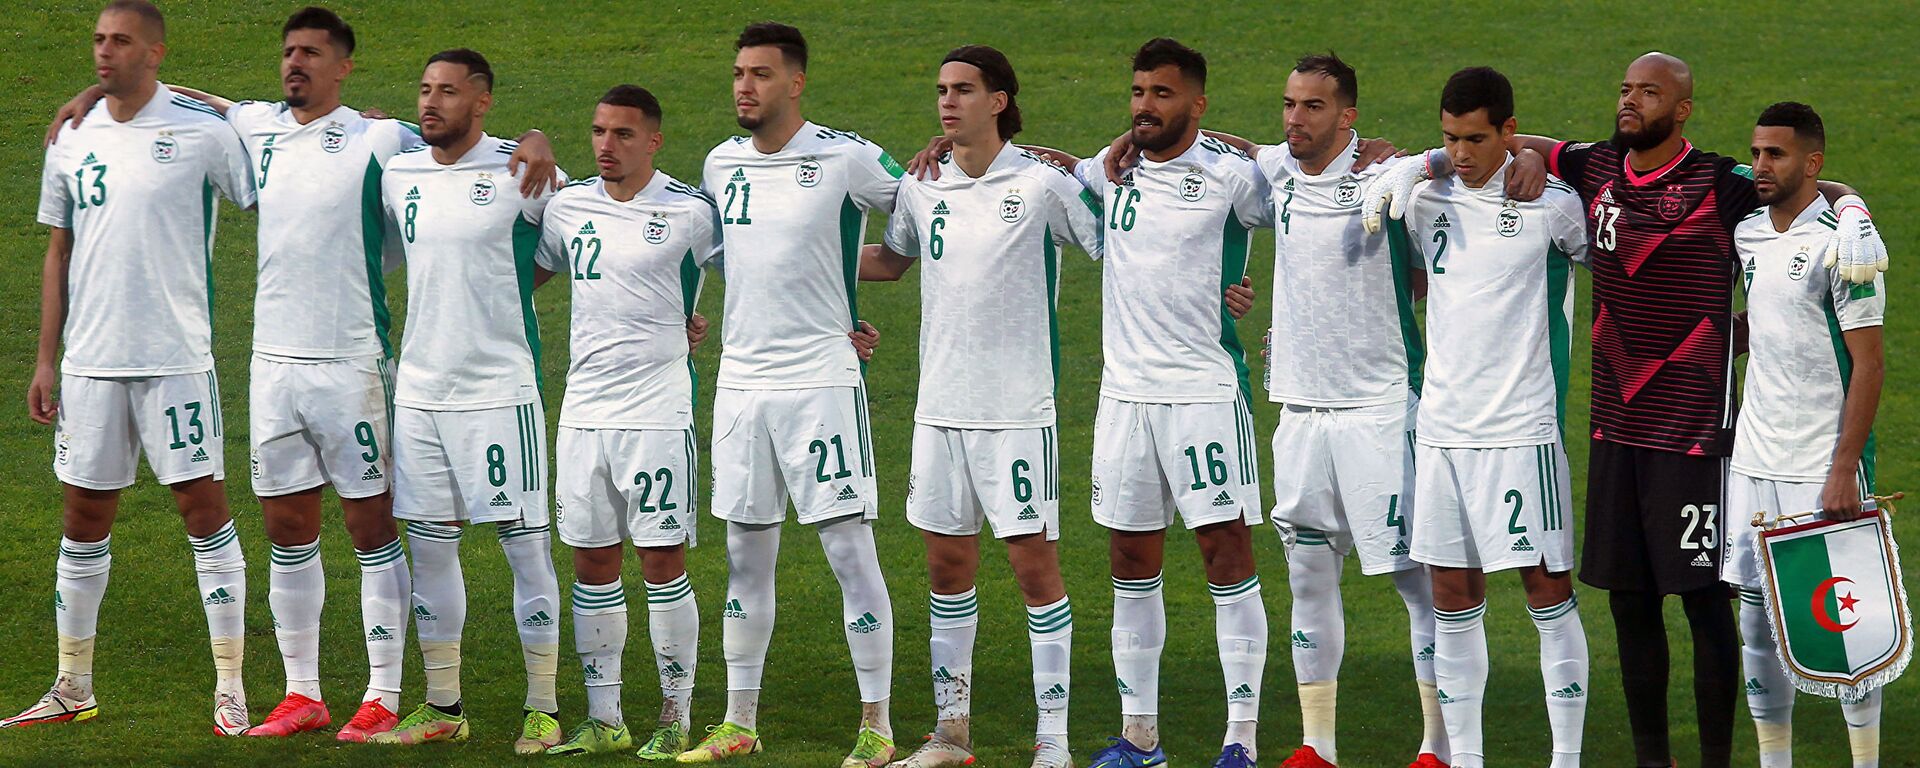 Đội tuyển bóng đá quốc gia Algeria trước trận đấu vòng loại bảng A FIFA World Cup 2022 tại Blida, Algeria - Sputnik Việt Nam, 1920, 17.11.2021